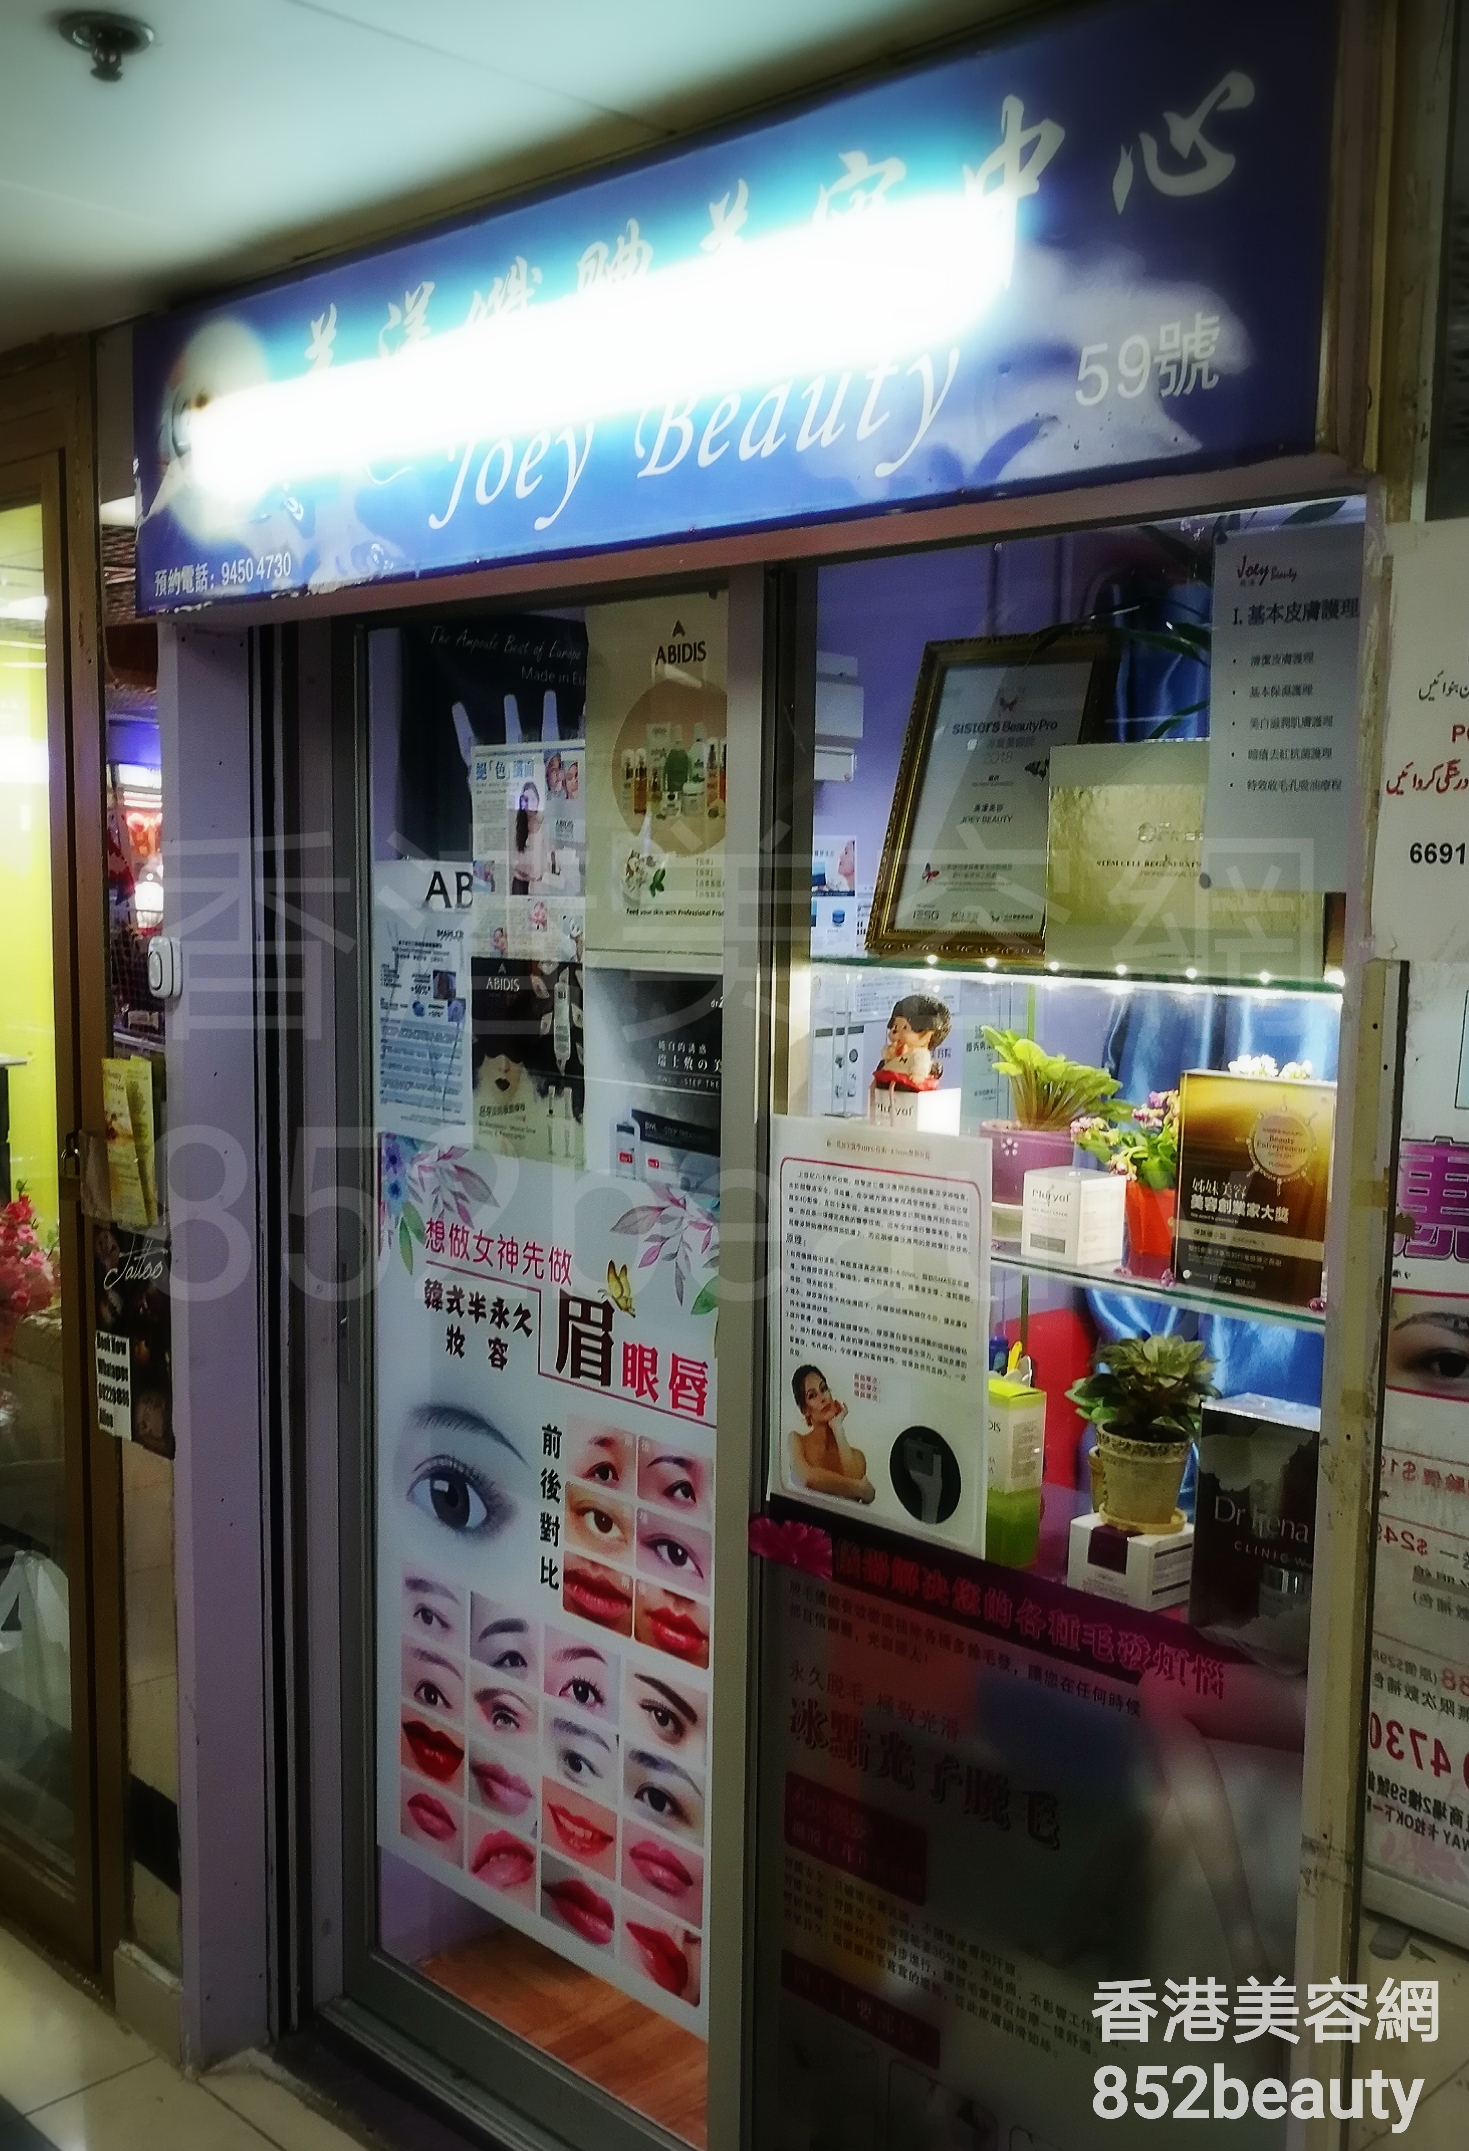 香港美容網 Hong Kong Beauty Salon 美容院 / 美容師: Joey Beauty 美漾美容 (元朗店)